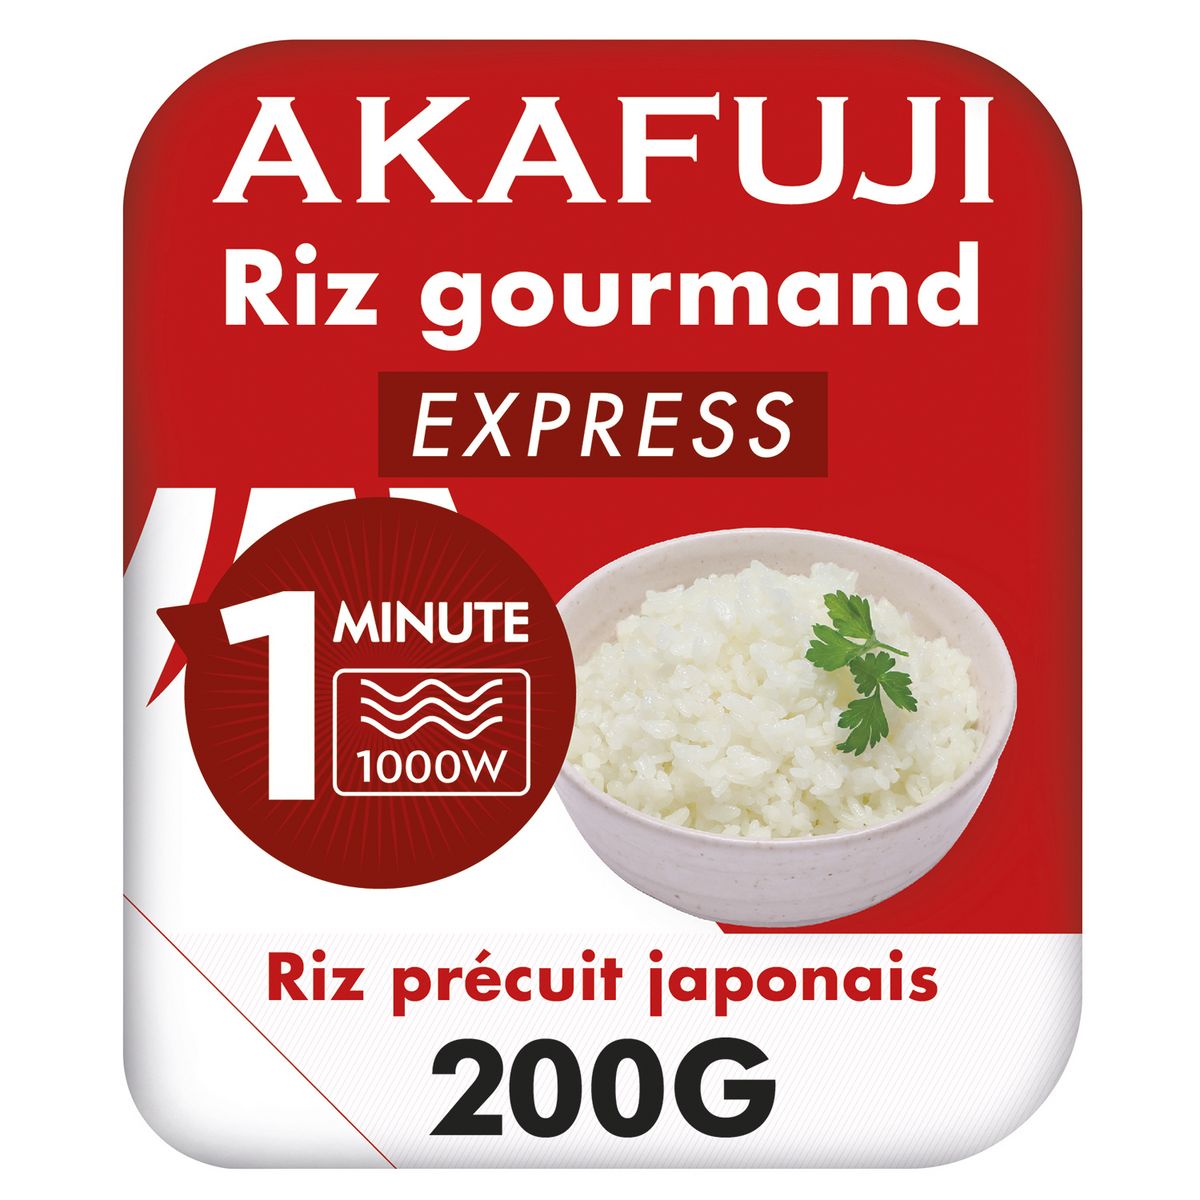 AKAFUJI Riz japonais express prêt en 1 minute 200g